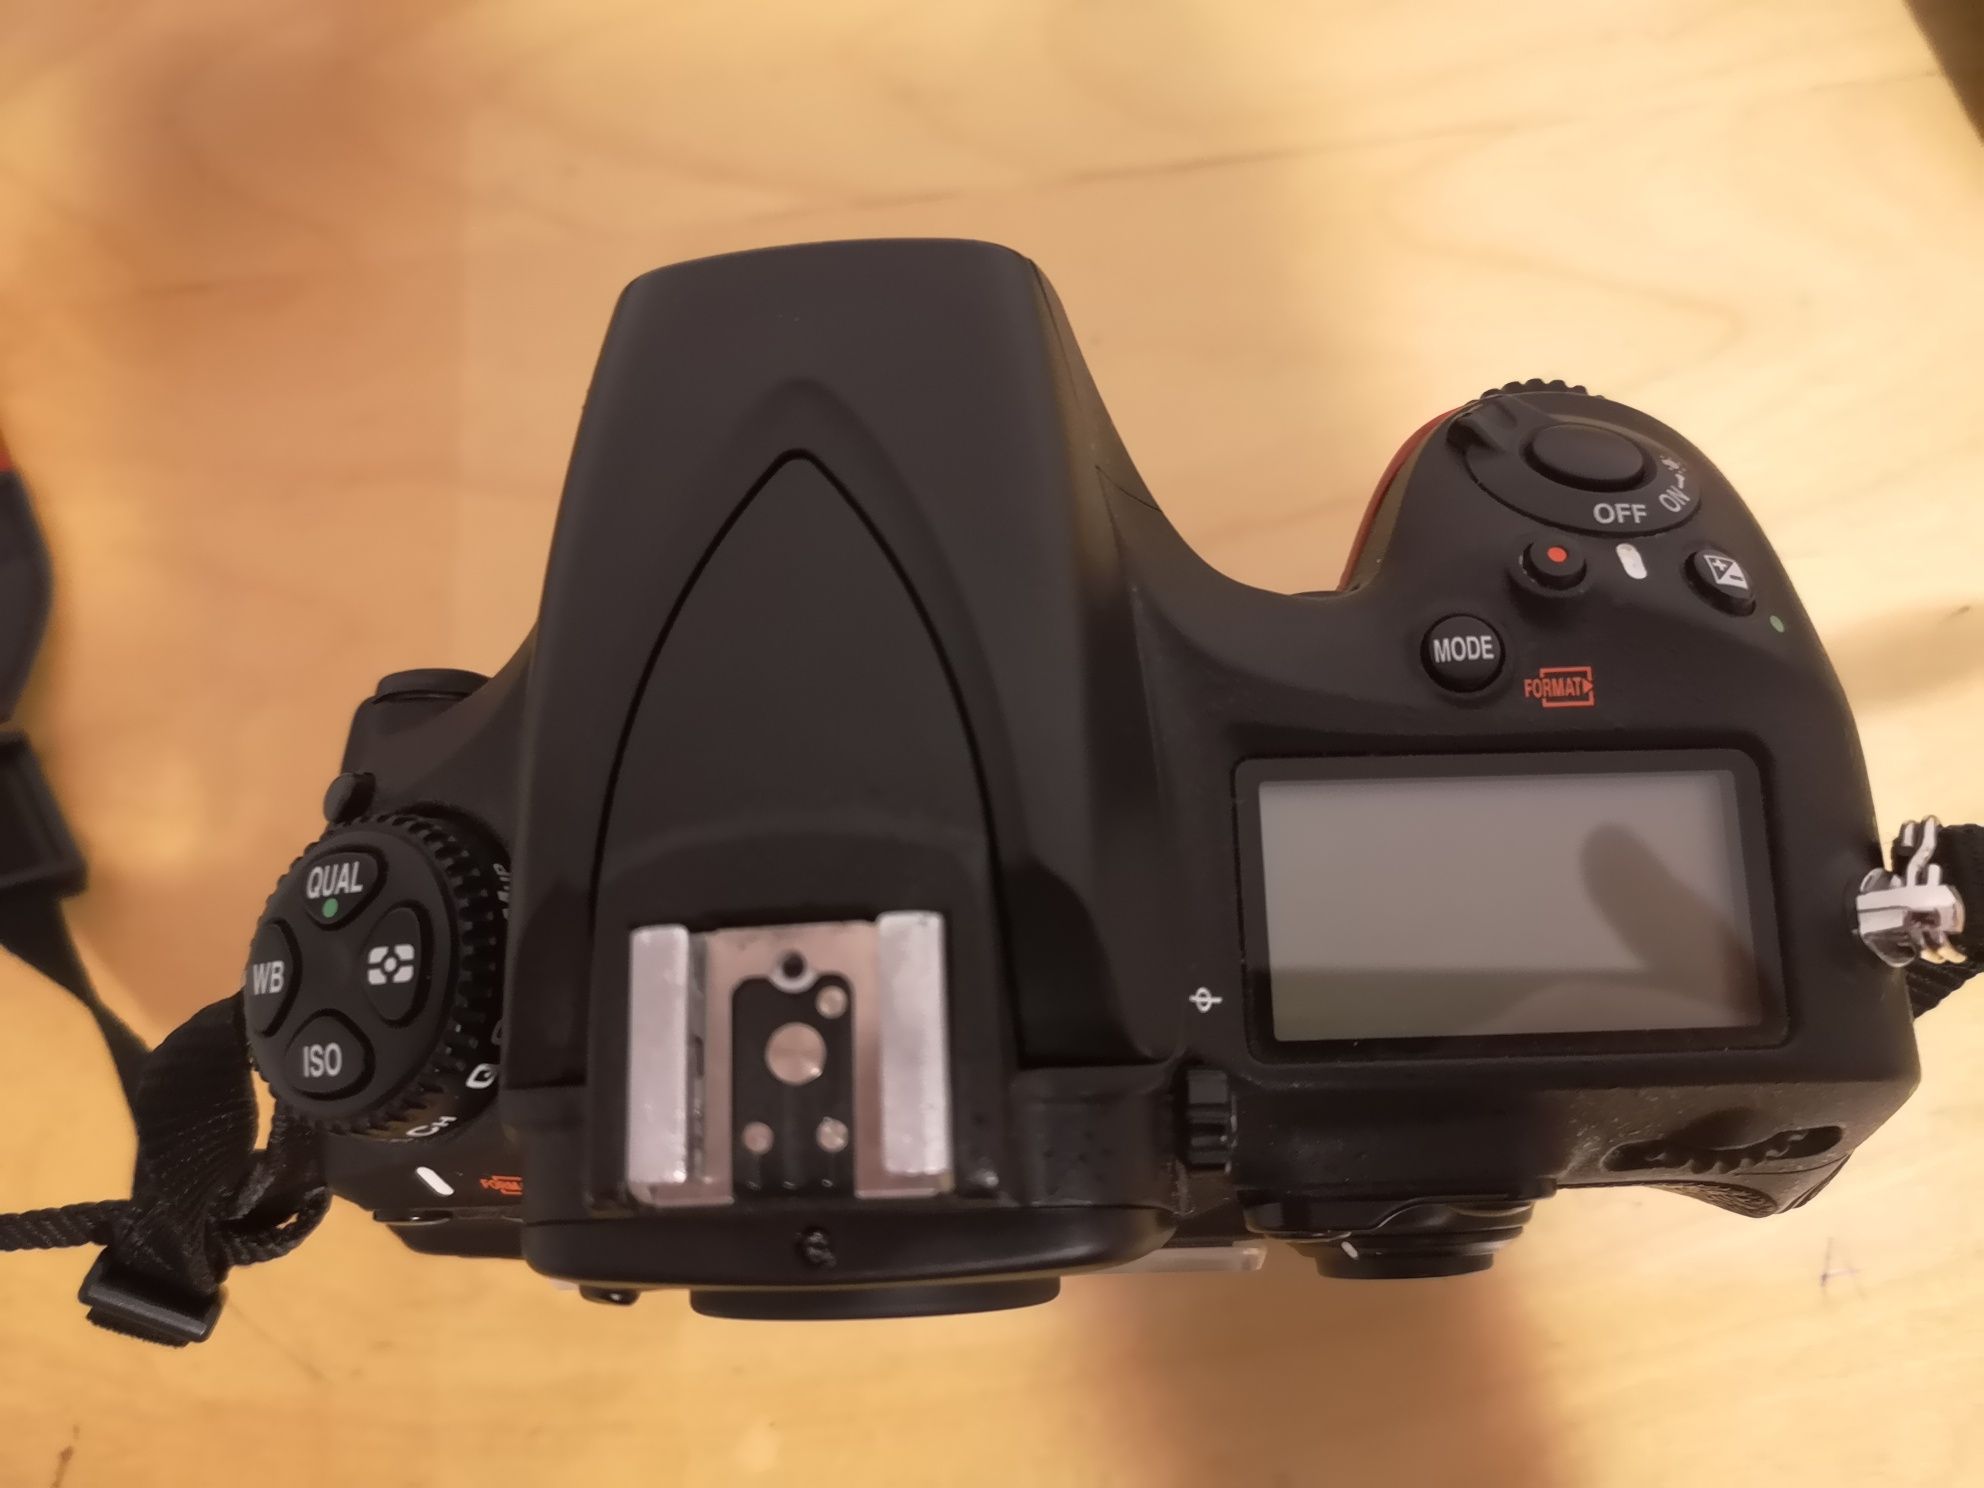 Nikon D810 cutie originala, accesorii, full frame, impecabil, dslr